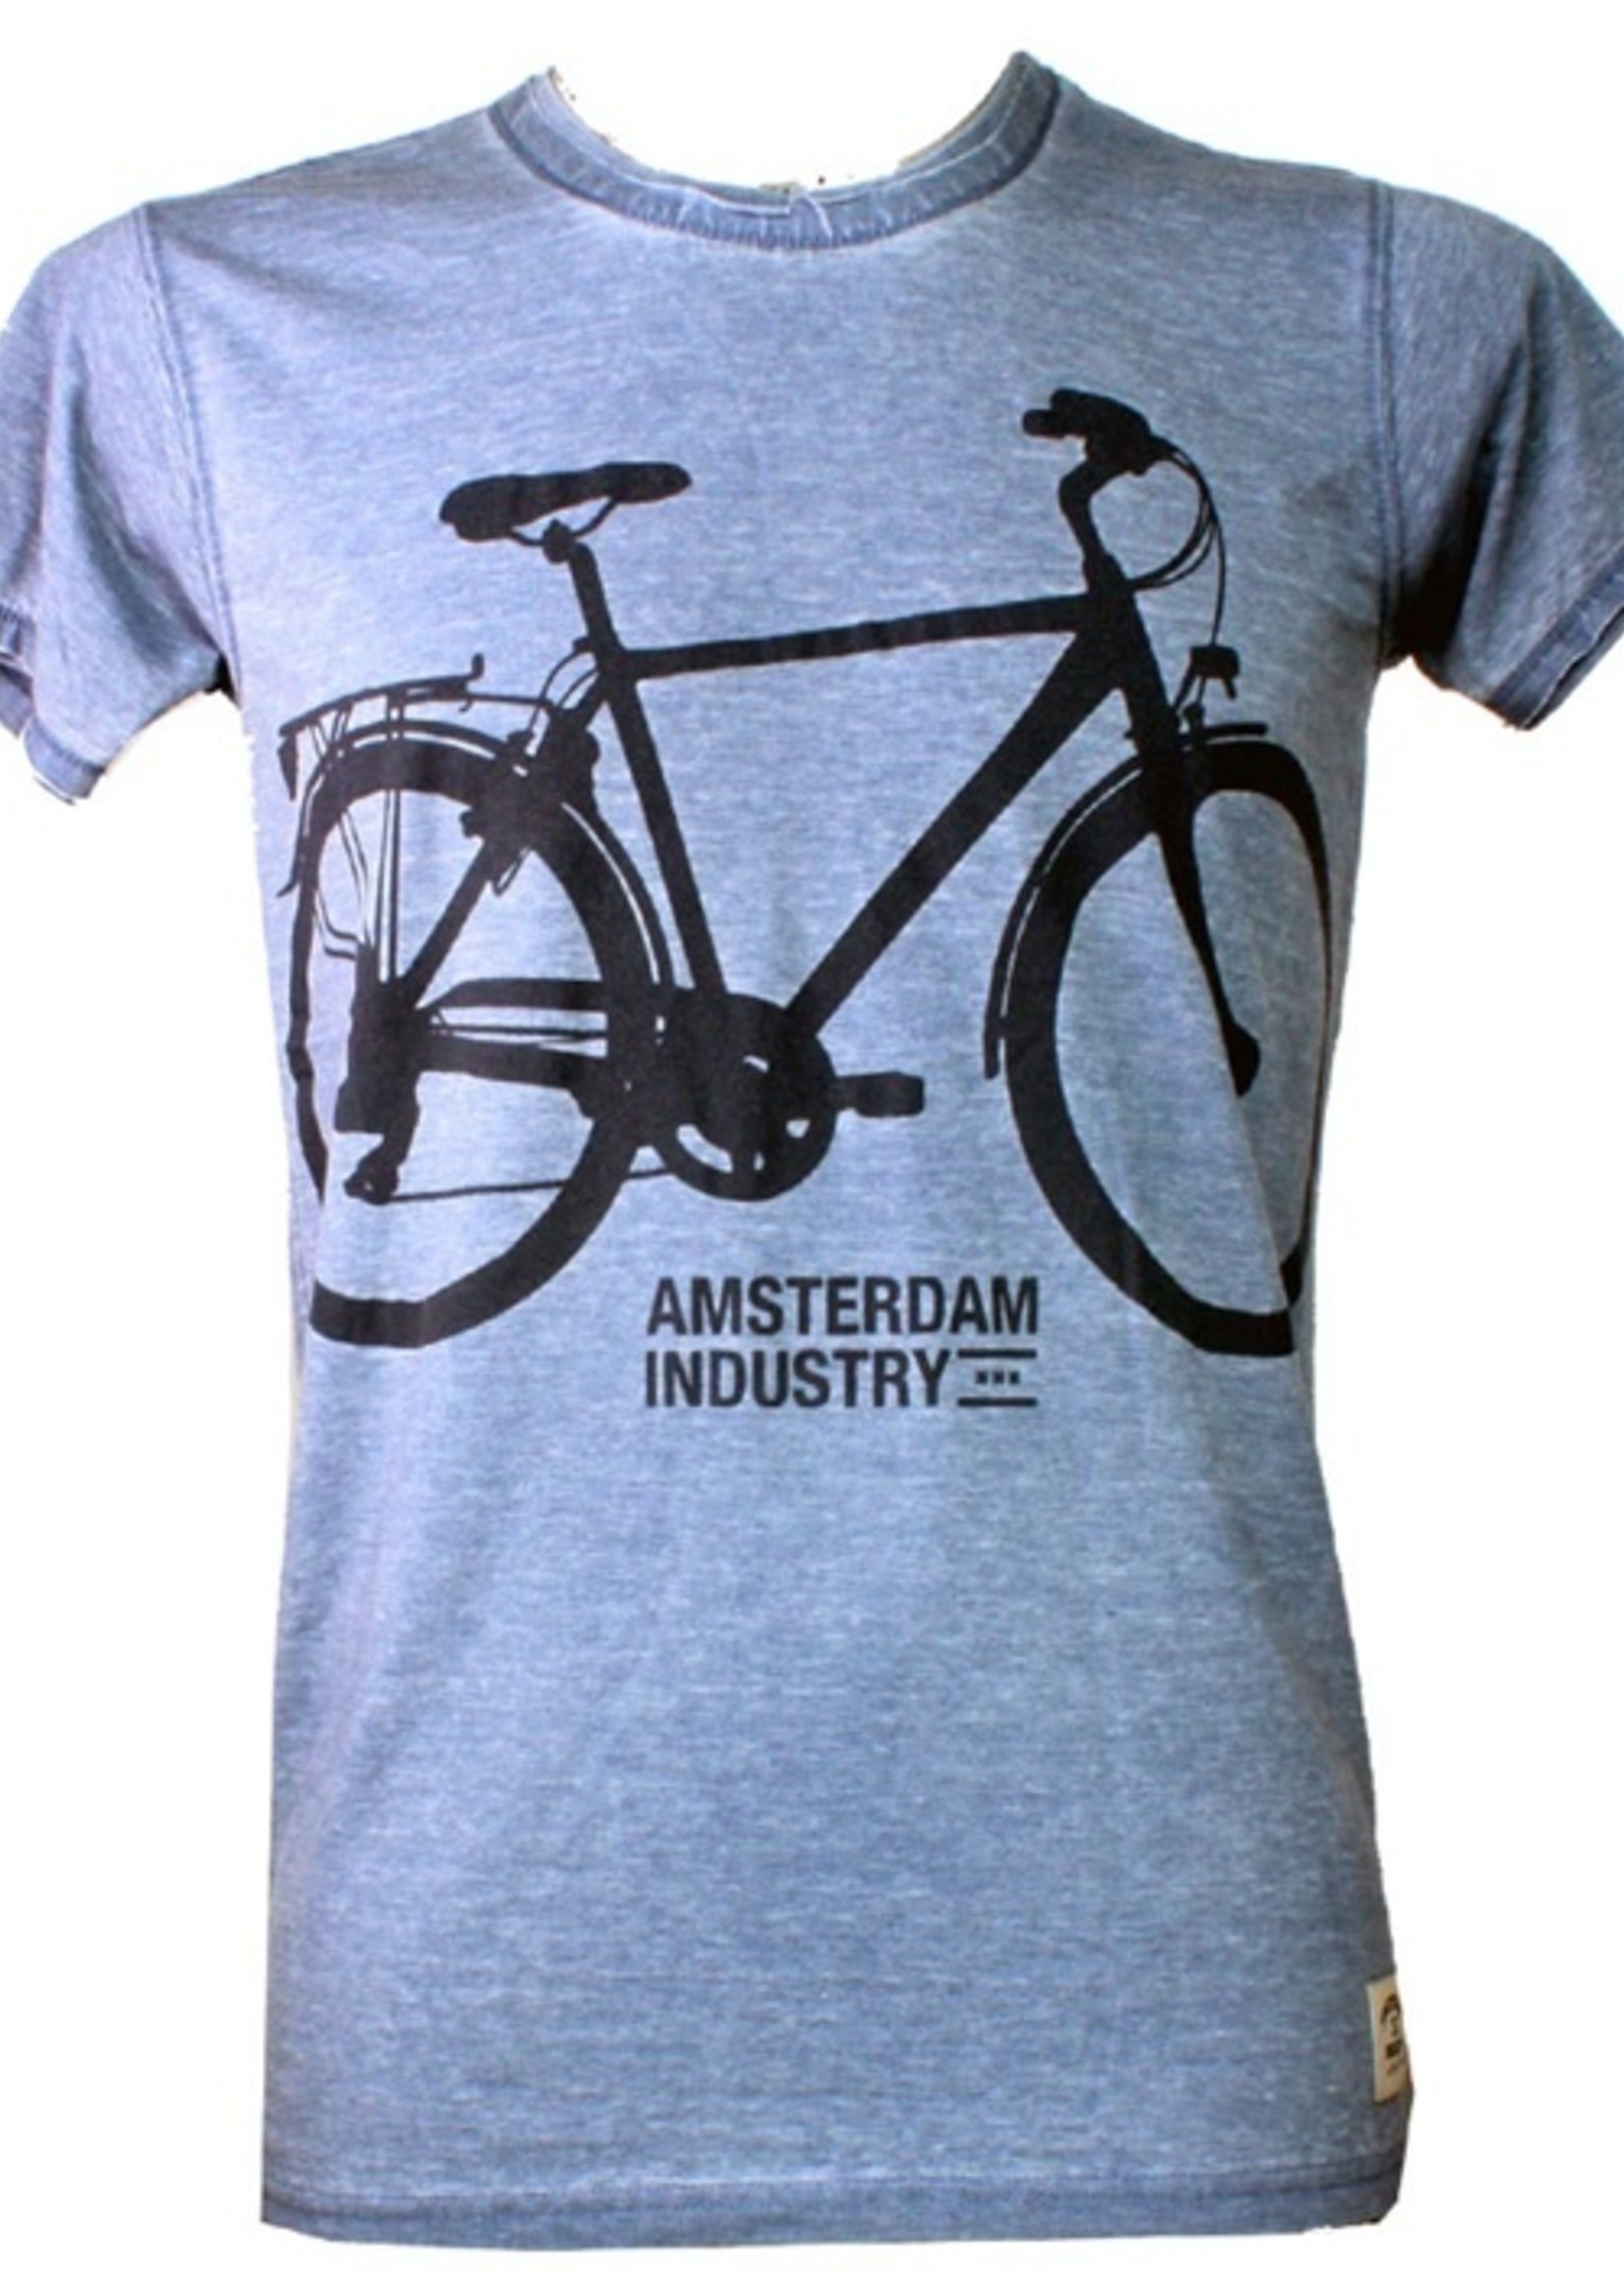 geestelijke gezondheid circulatie Bewolkt T-shirt fiets Blauw - Amsterdam Industry